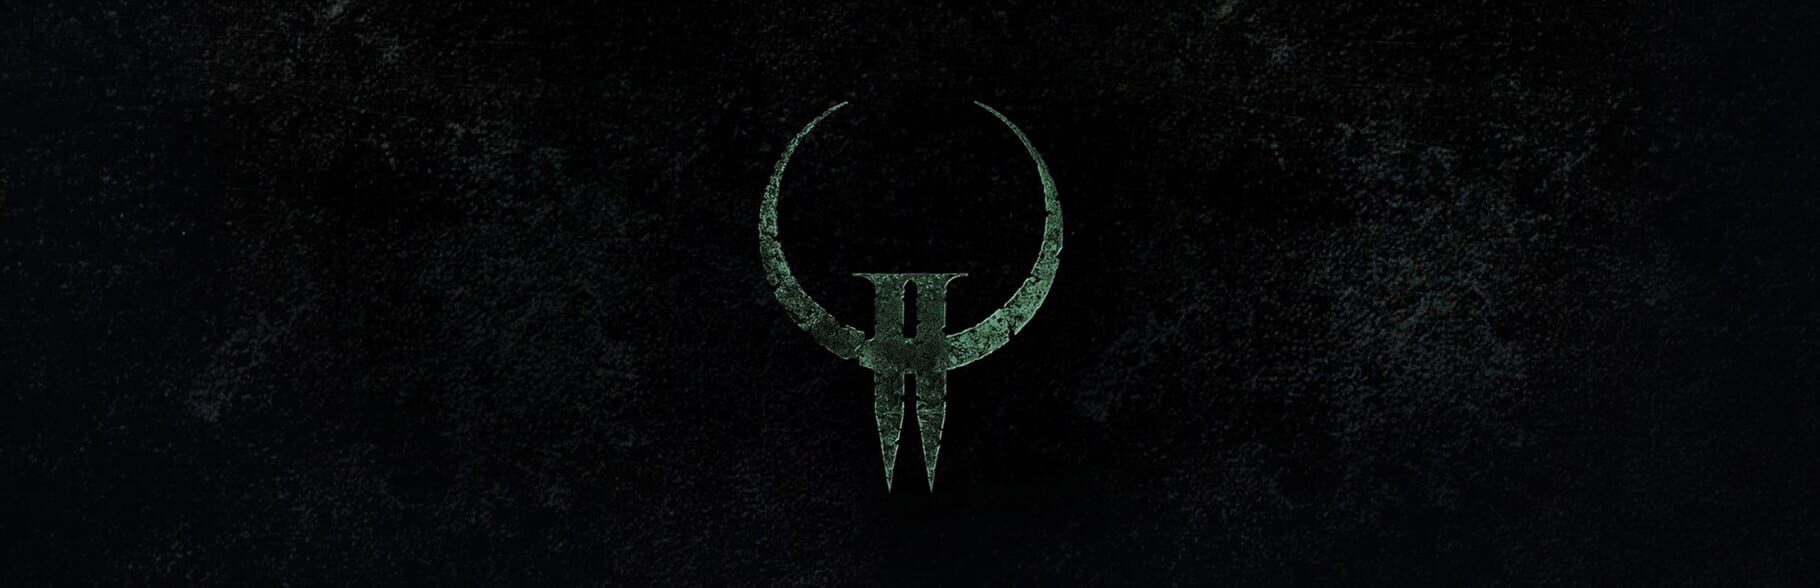 Quake II artwork